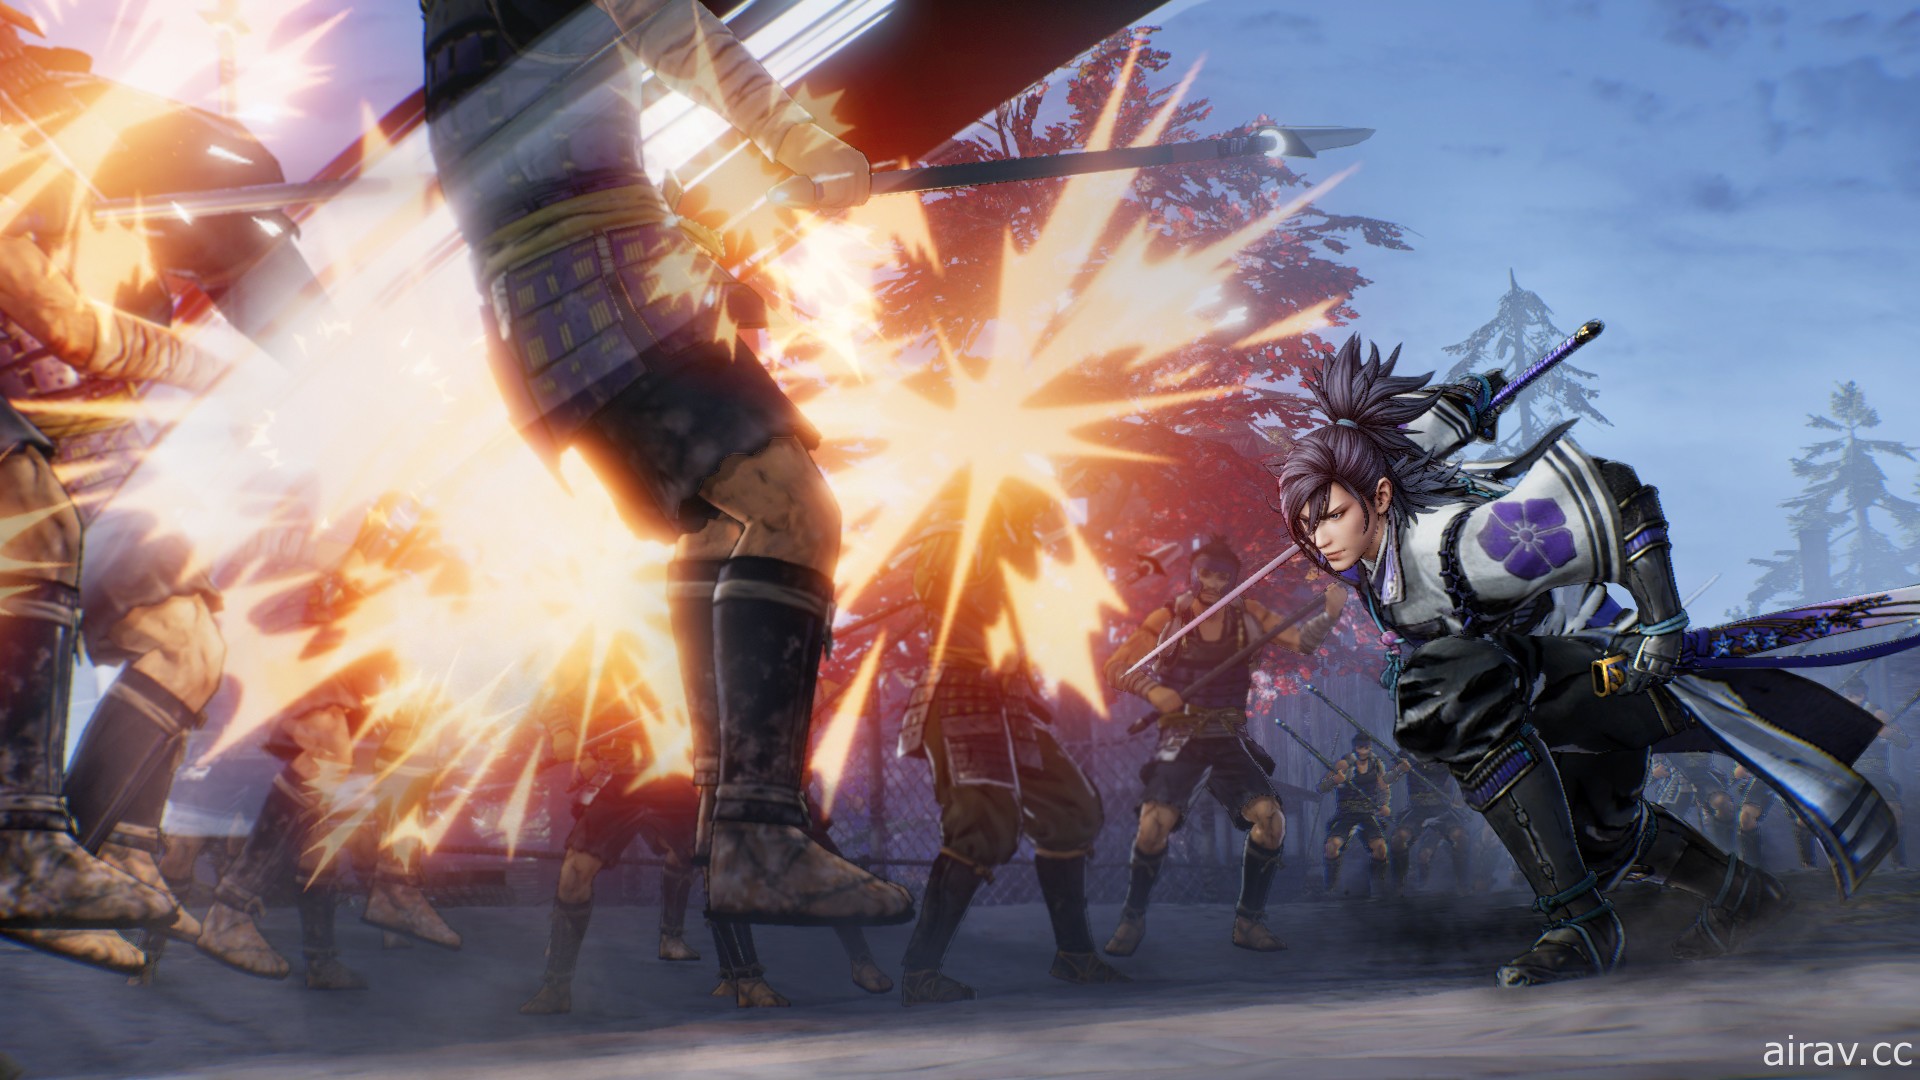 《戰國無雙 5》PC 版釋出試玩版 預定 7 月 27 日上市